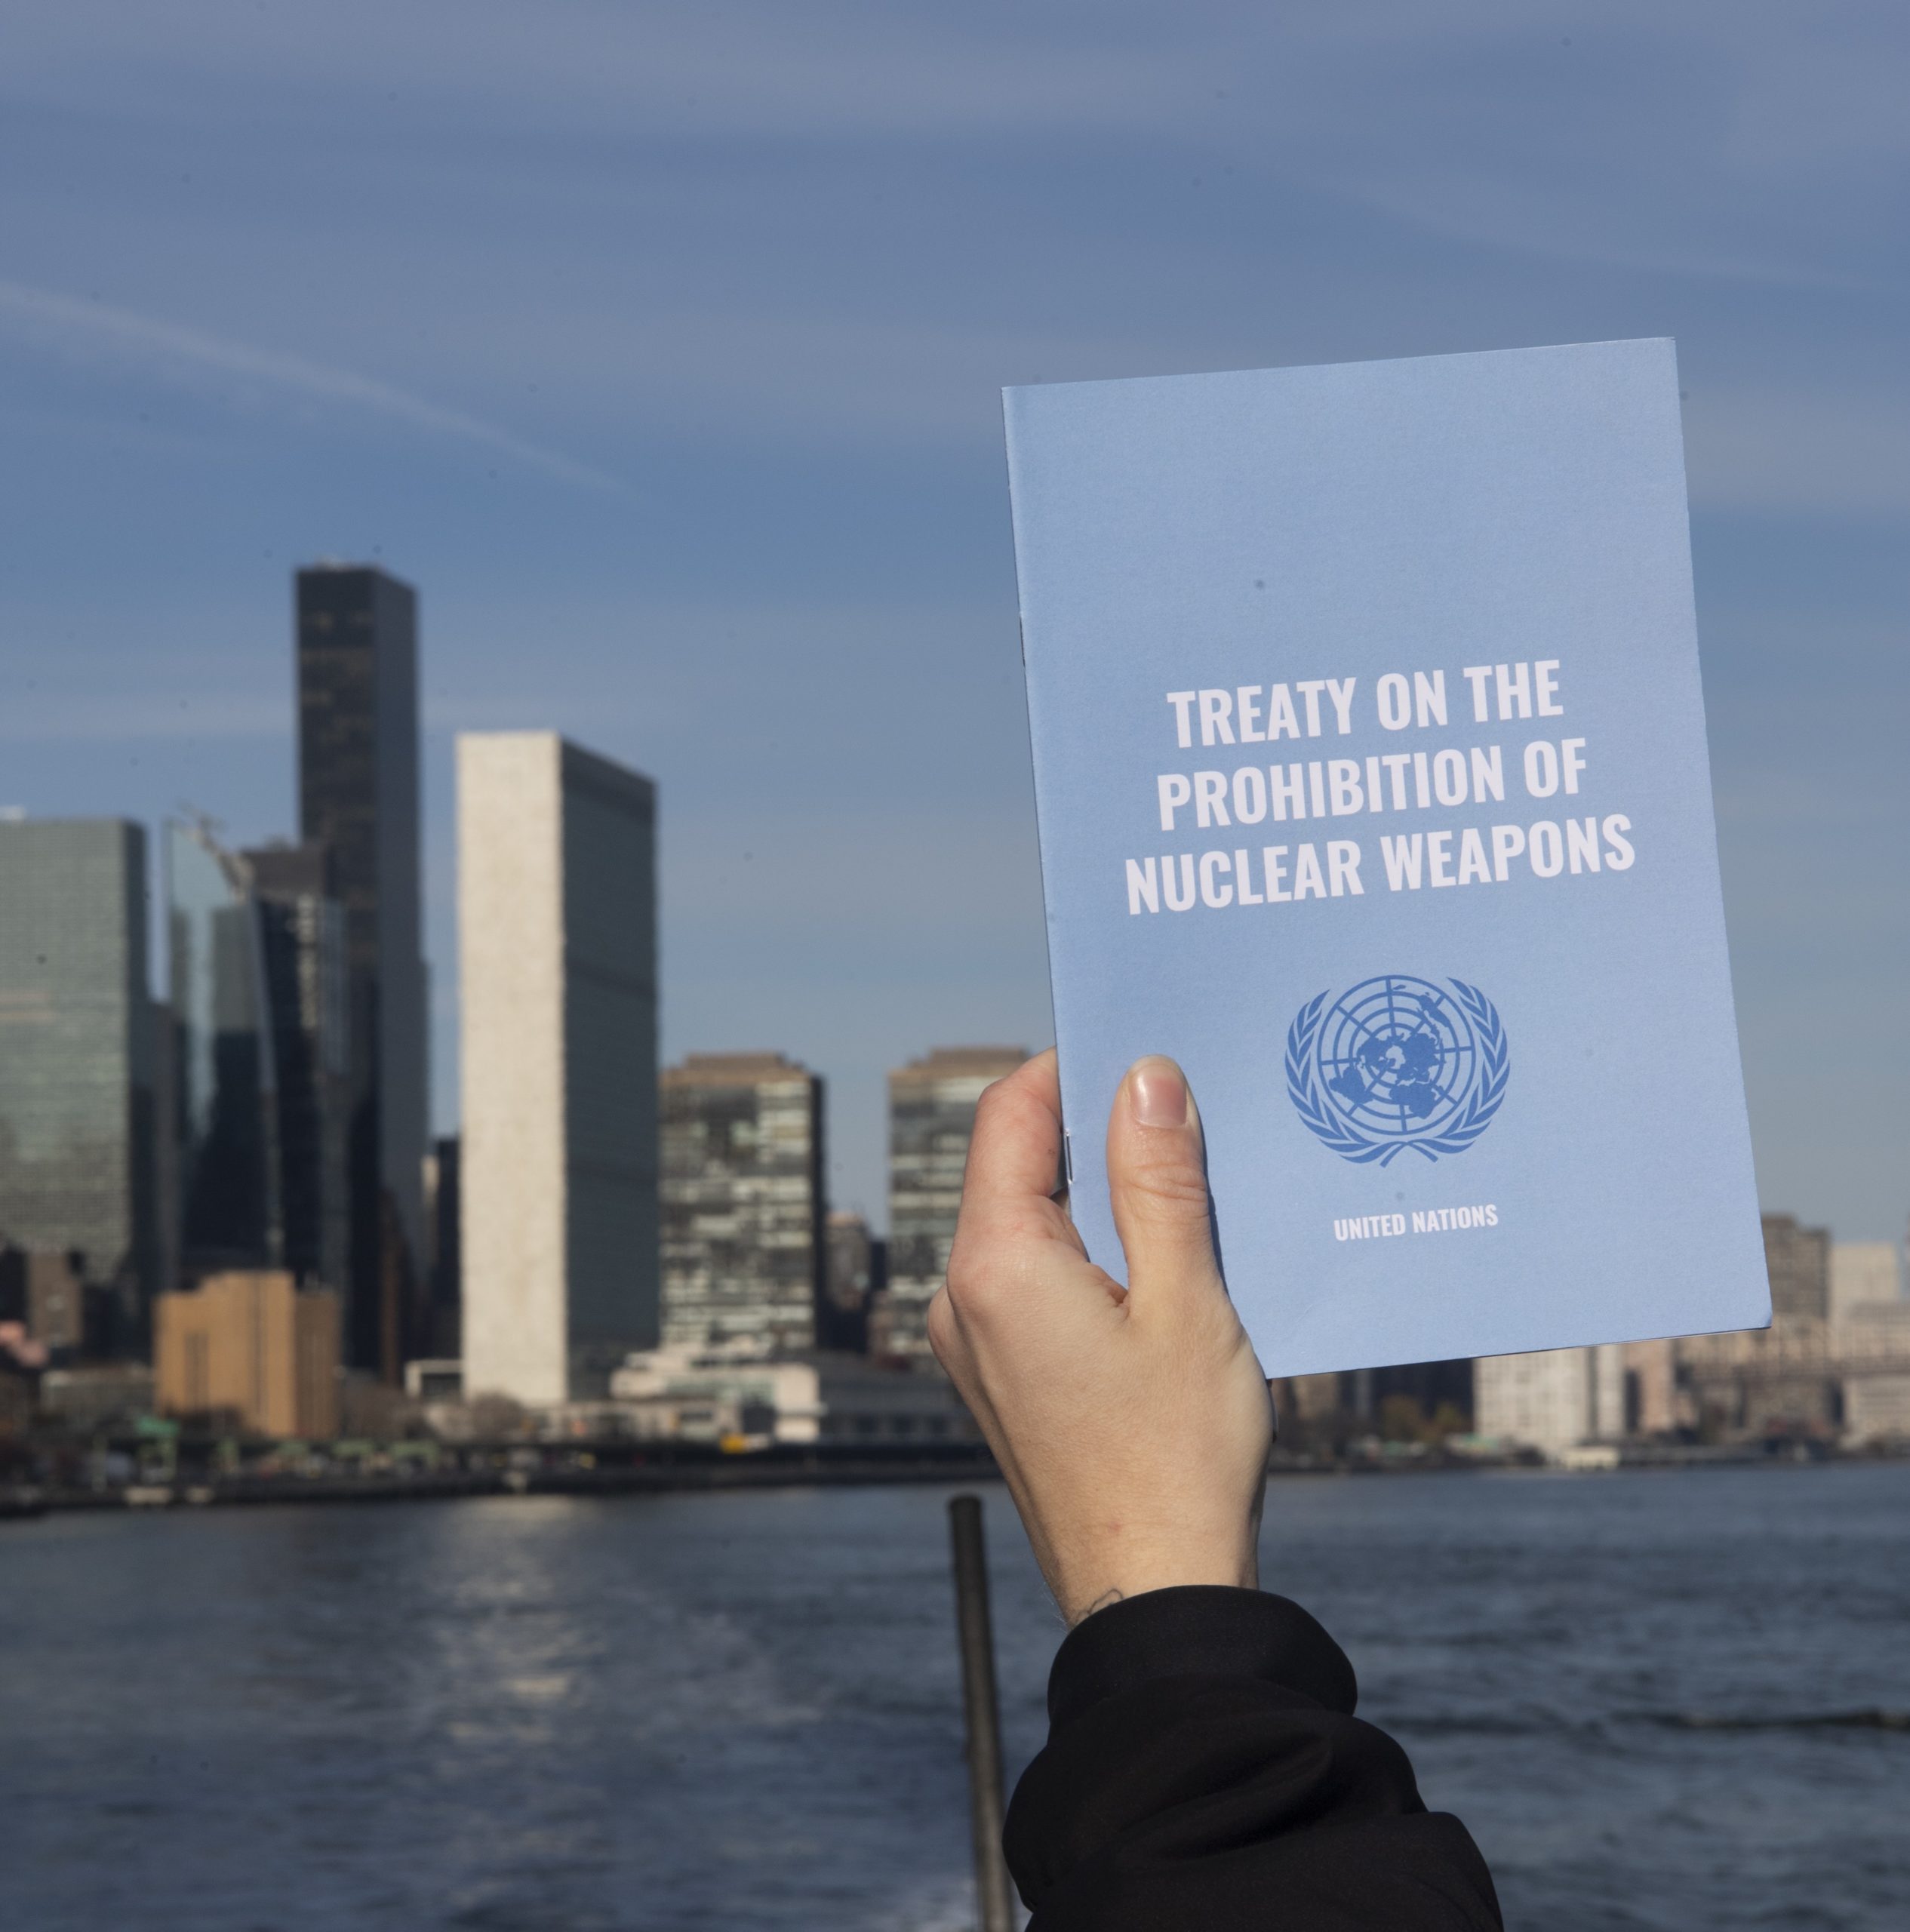 Terzo anniversario dell’entrata in vigore del TPNW, la norma internazionale contro le armi nucleari